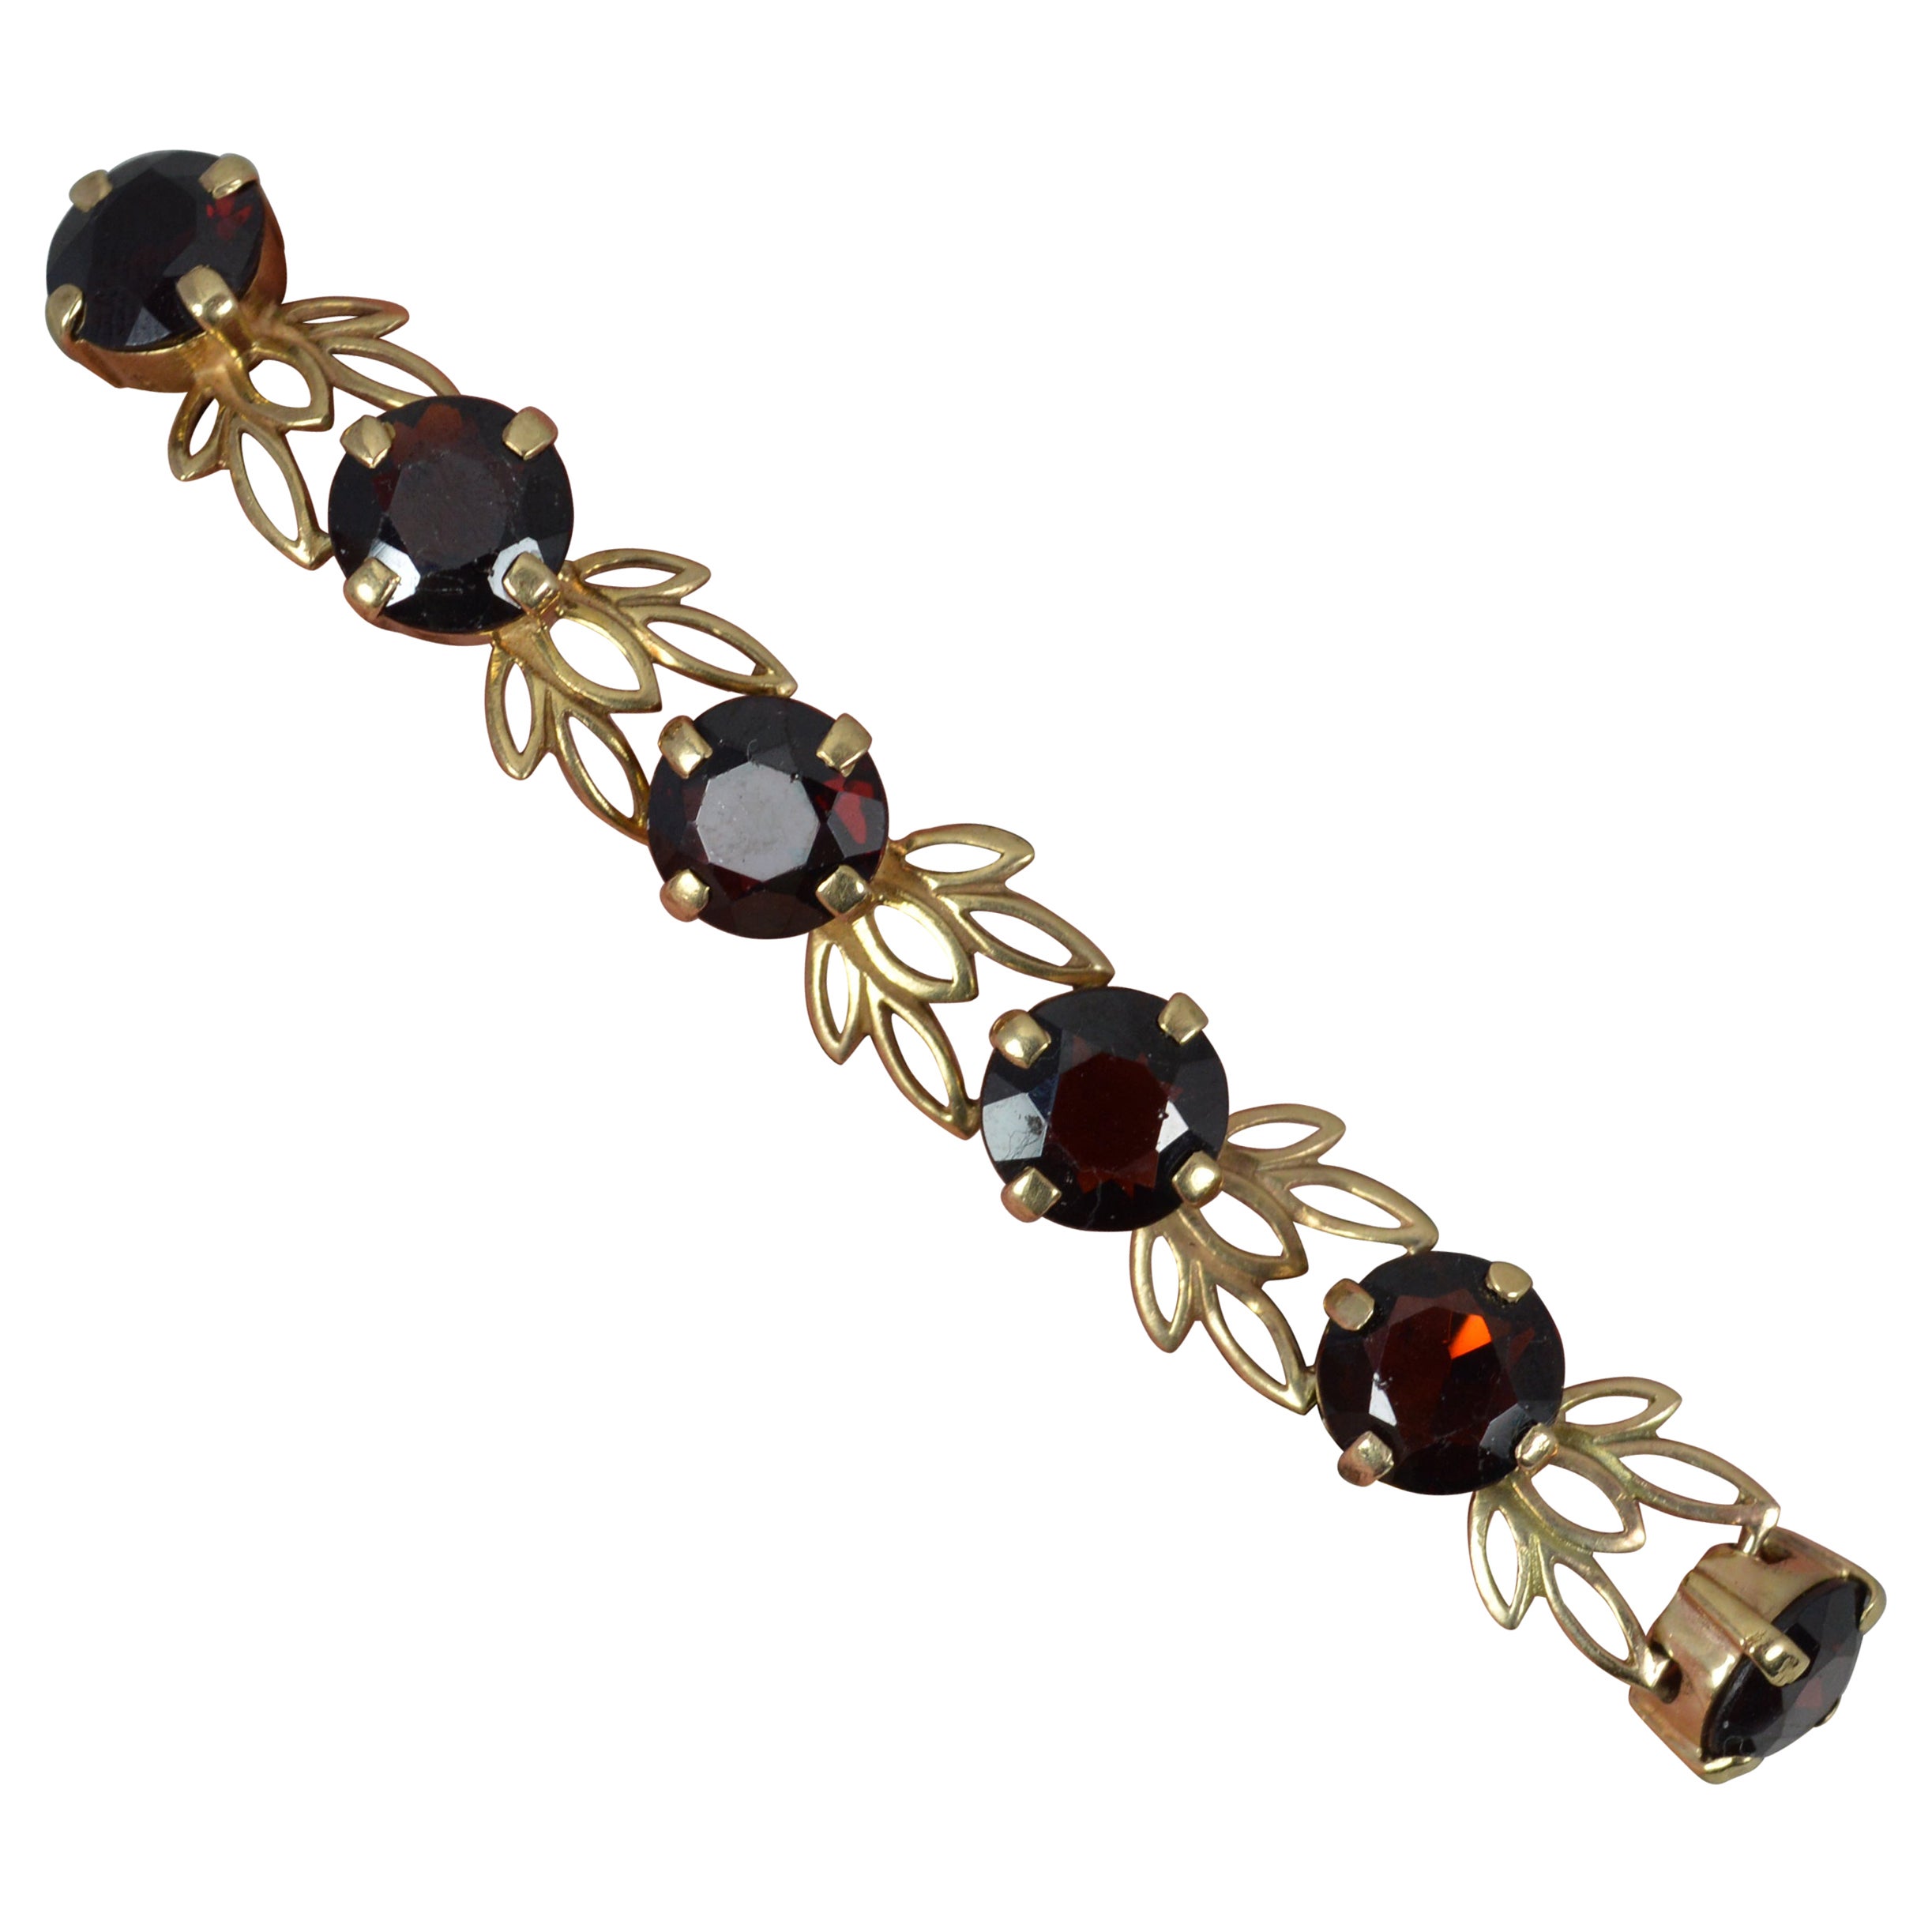 Solid 9 Carat Gold and Garnet Floral Bracelet